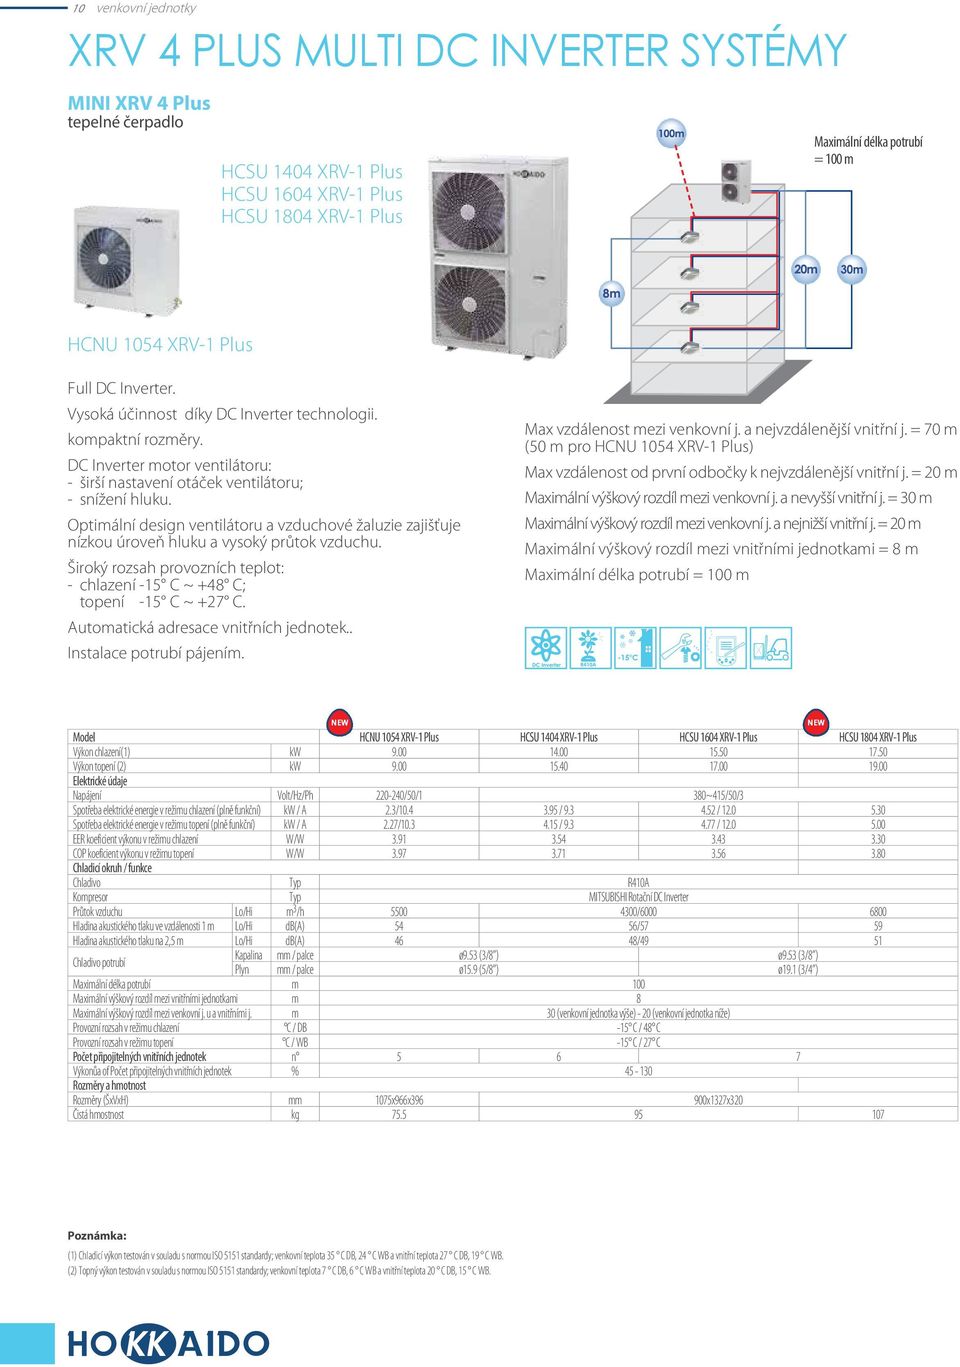 Optimální design ventilátoru a vzduchové žaluzie zajišťuje nízkou úroveň hluku a vysoký průtok vzduchu. Široký rozsah provozních teplot: - chlazení -15 C ~ +48 C; topení -15 C ~ +27 C.